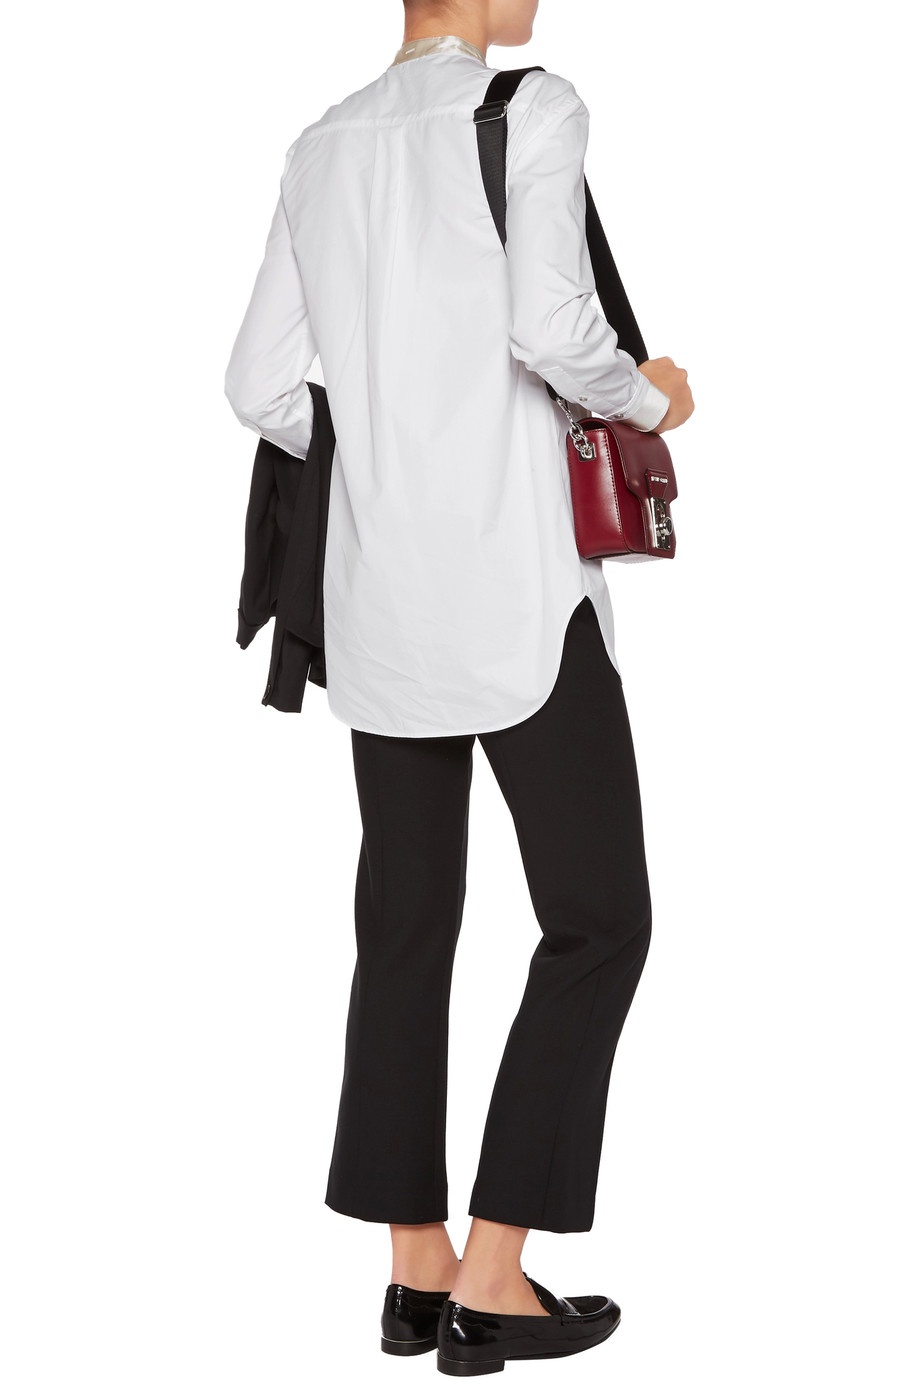 Удлиненная блузка Rag&Bone, хлопок и шелк, размер 42-44